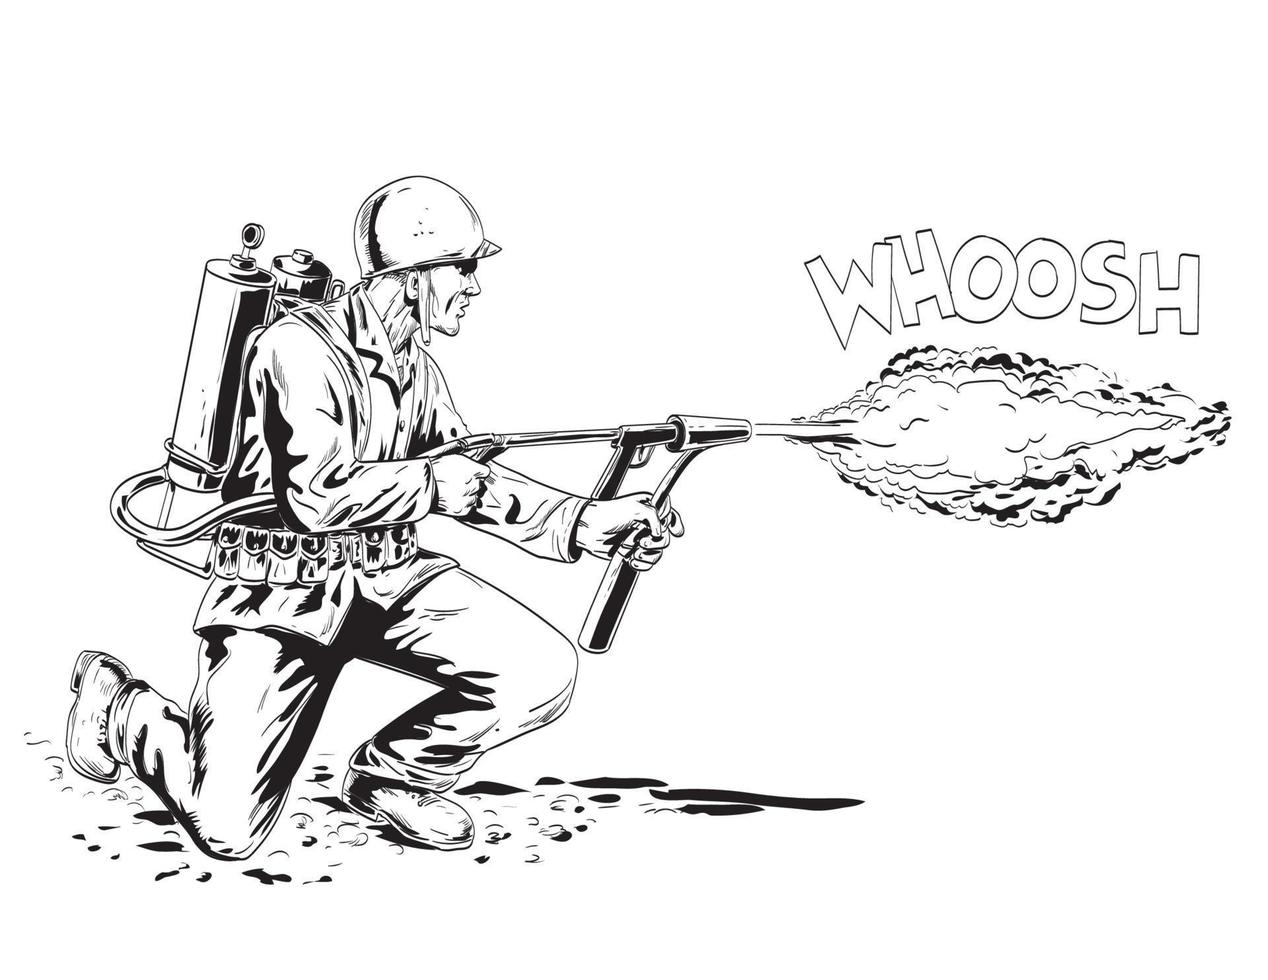 mundo guerra dos americano soldado americano soldado disparo bazuca o tubo de estufa cohete lanzacohetes historietas estilo dibujo vector